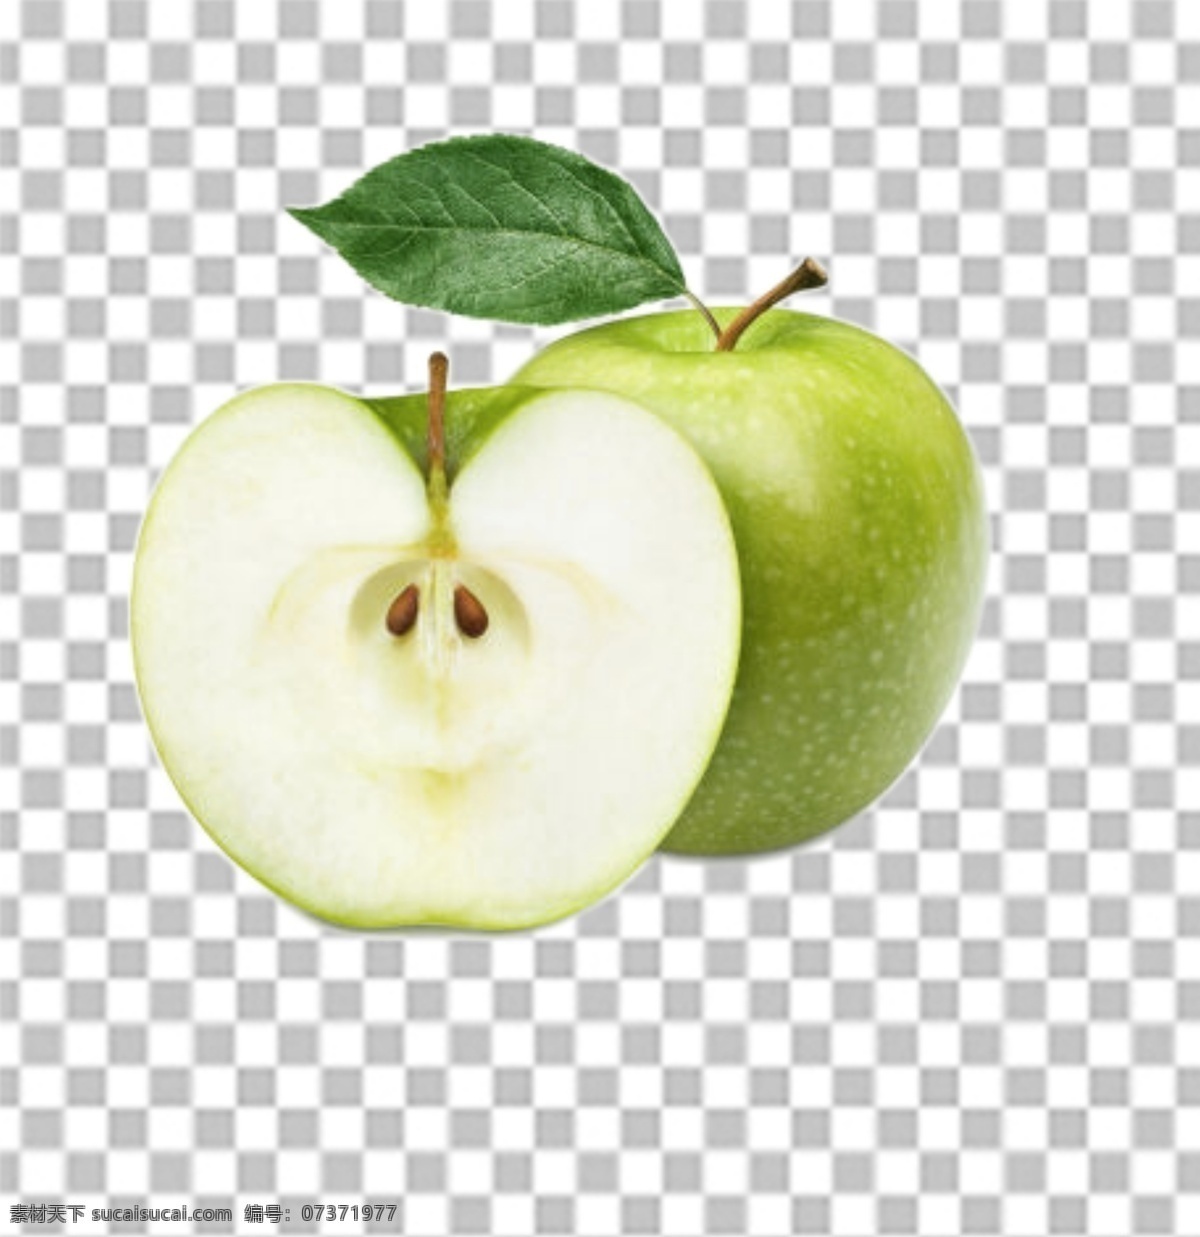 青苹果图片 青苹果 苹果 水果特写 水果写真 透明底水果 免抠图 水果 分层图 通道 分层 新鲜 特写 透明背景 透明底 抠图 png图 生物世界 水果透明底